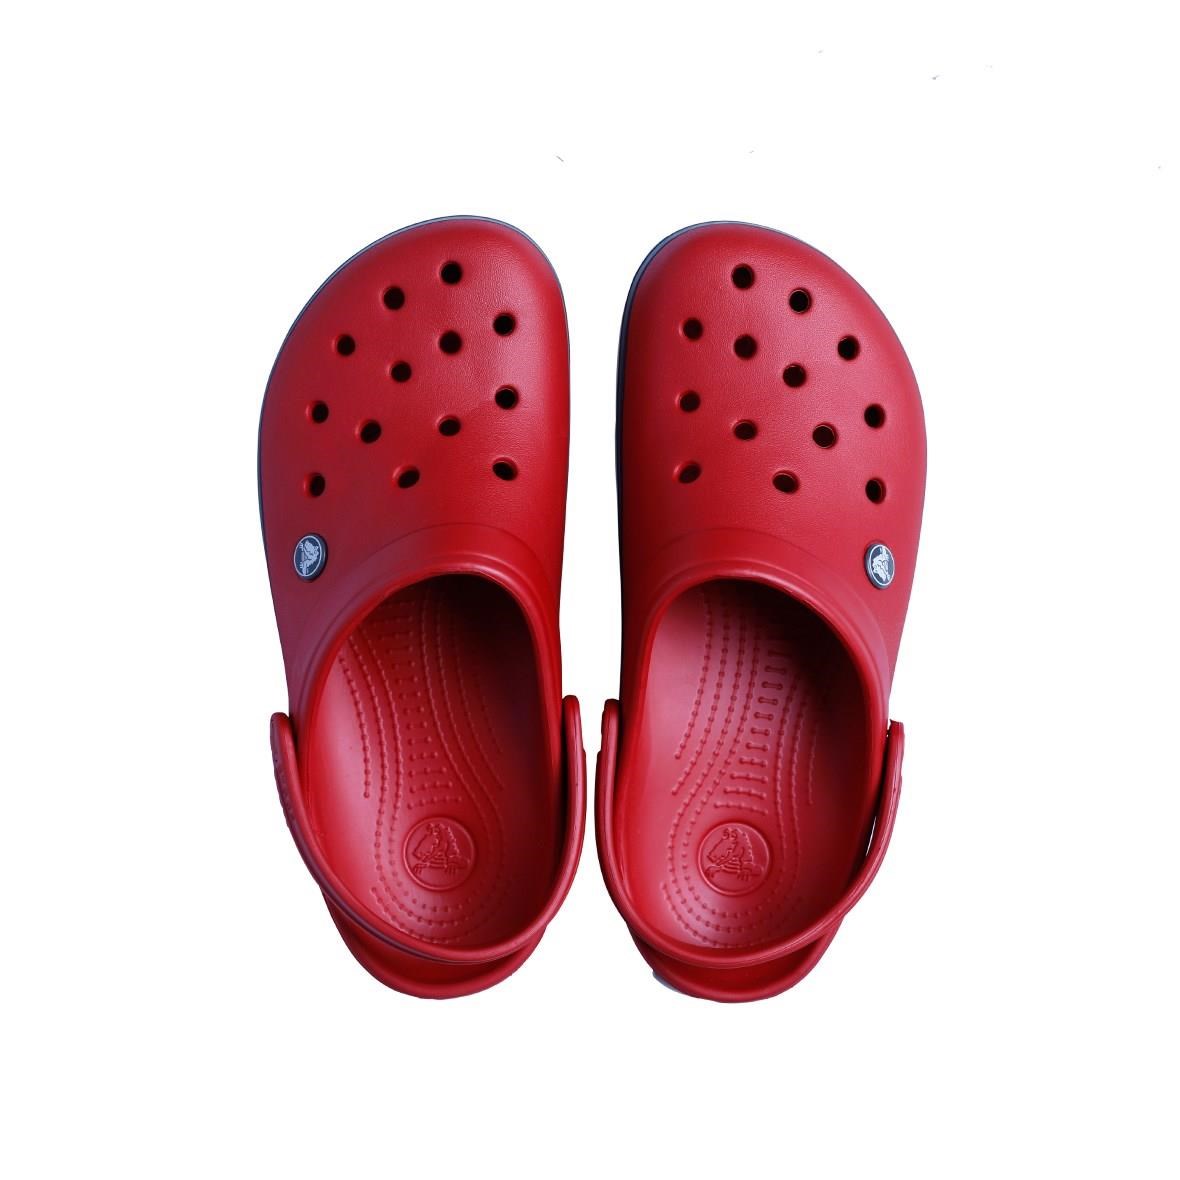 Crocs Crocband Bayan Terlik - Kırmızı